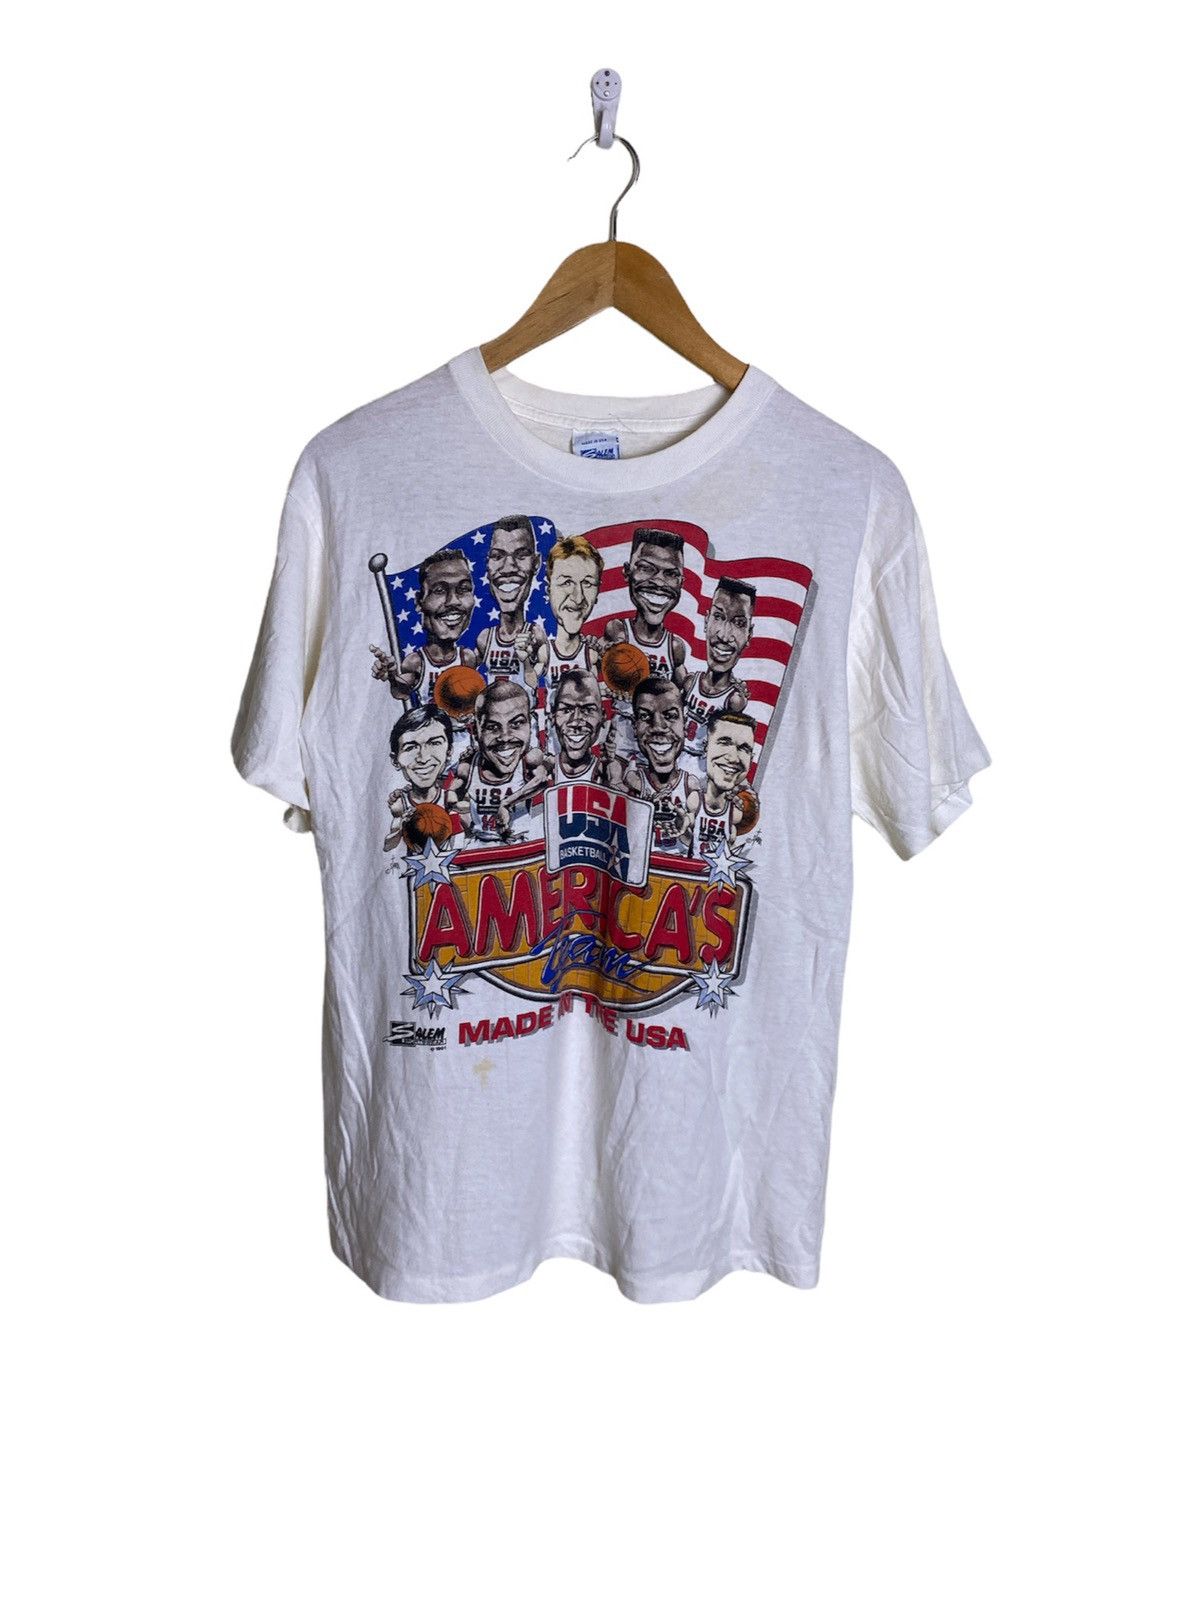 Vintage 1991 USA Dream Team Tshirt - 1